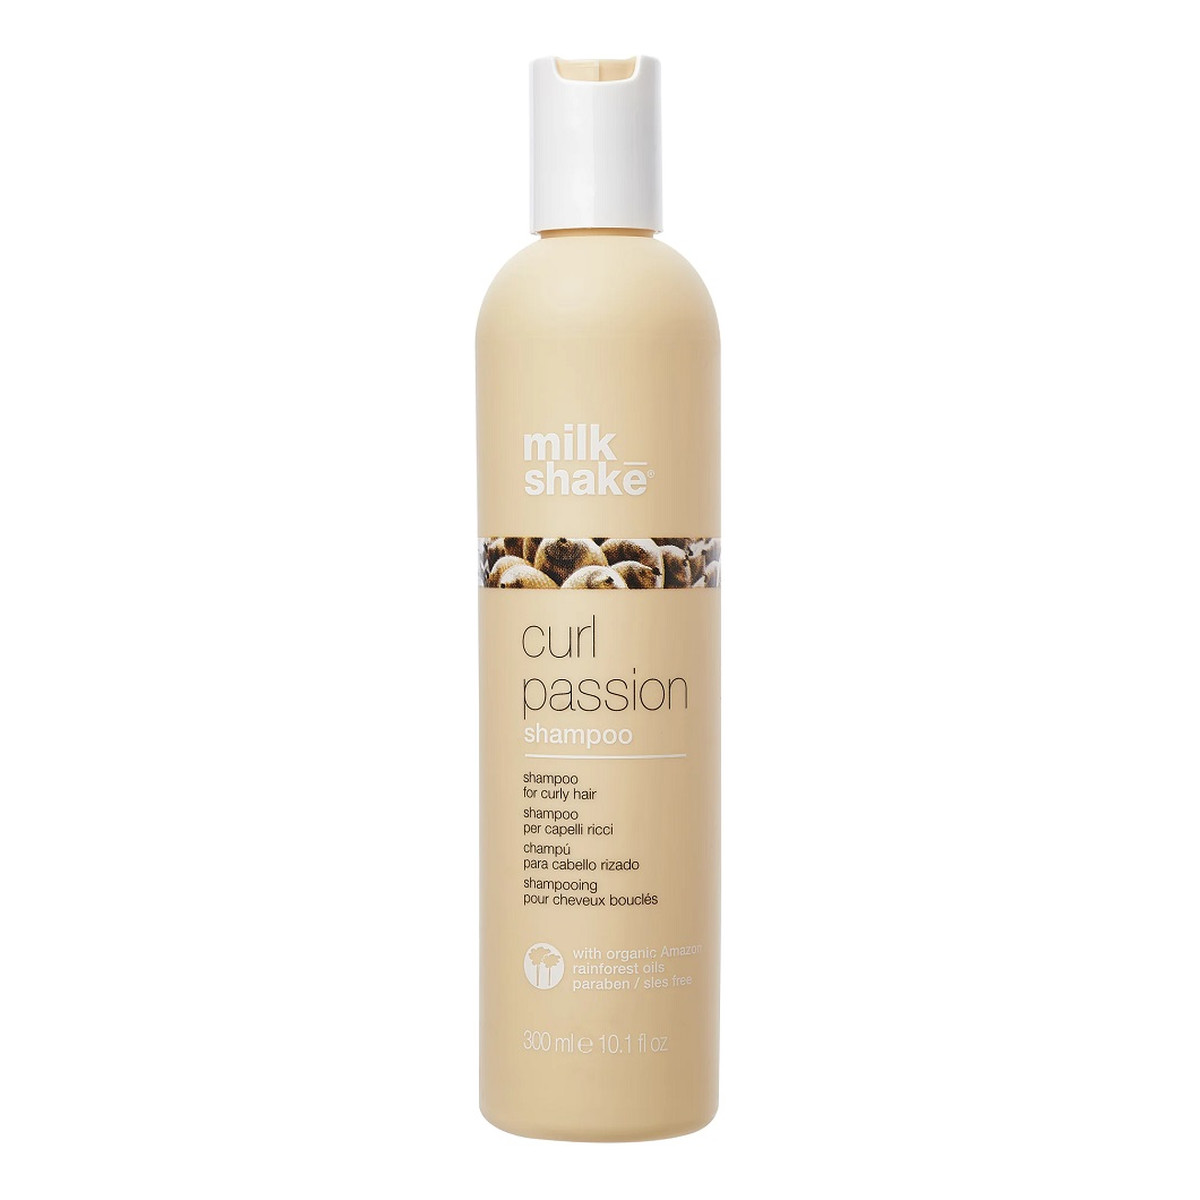 Milk Shake Curl passion shampoo szampon do włosów kręconych 300ml